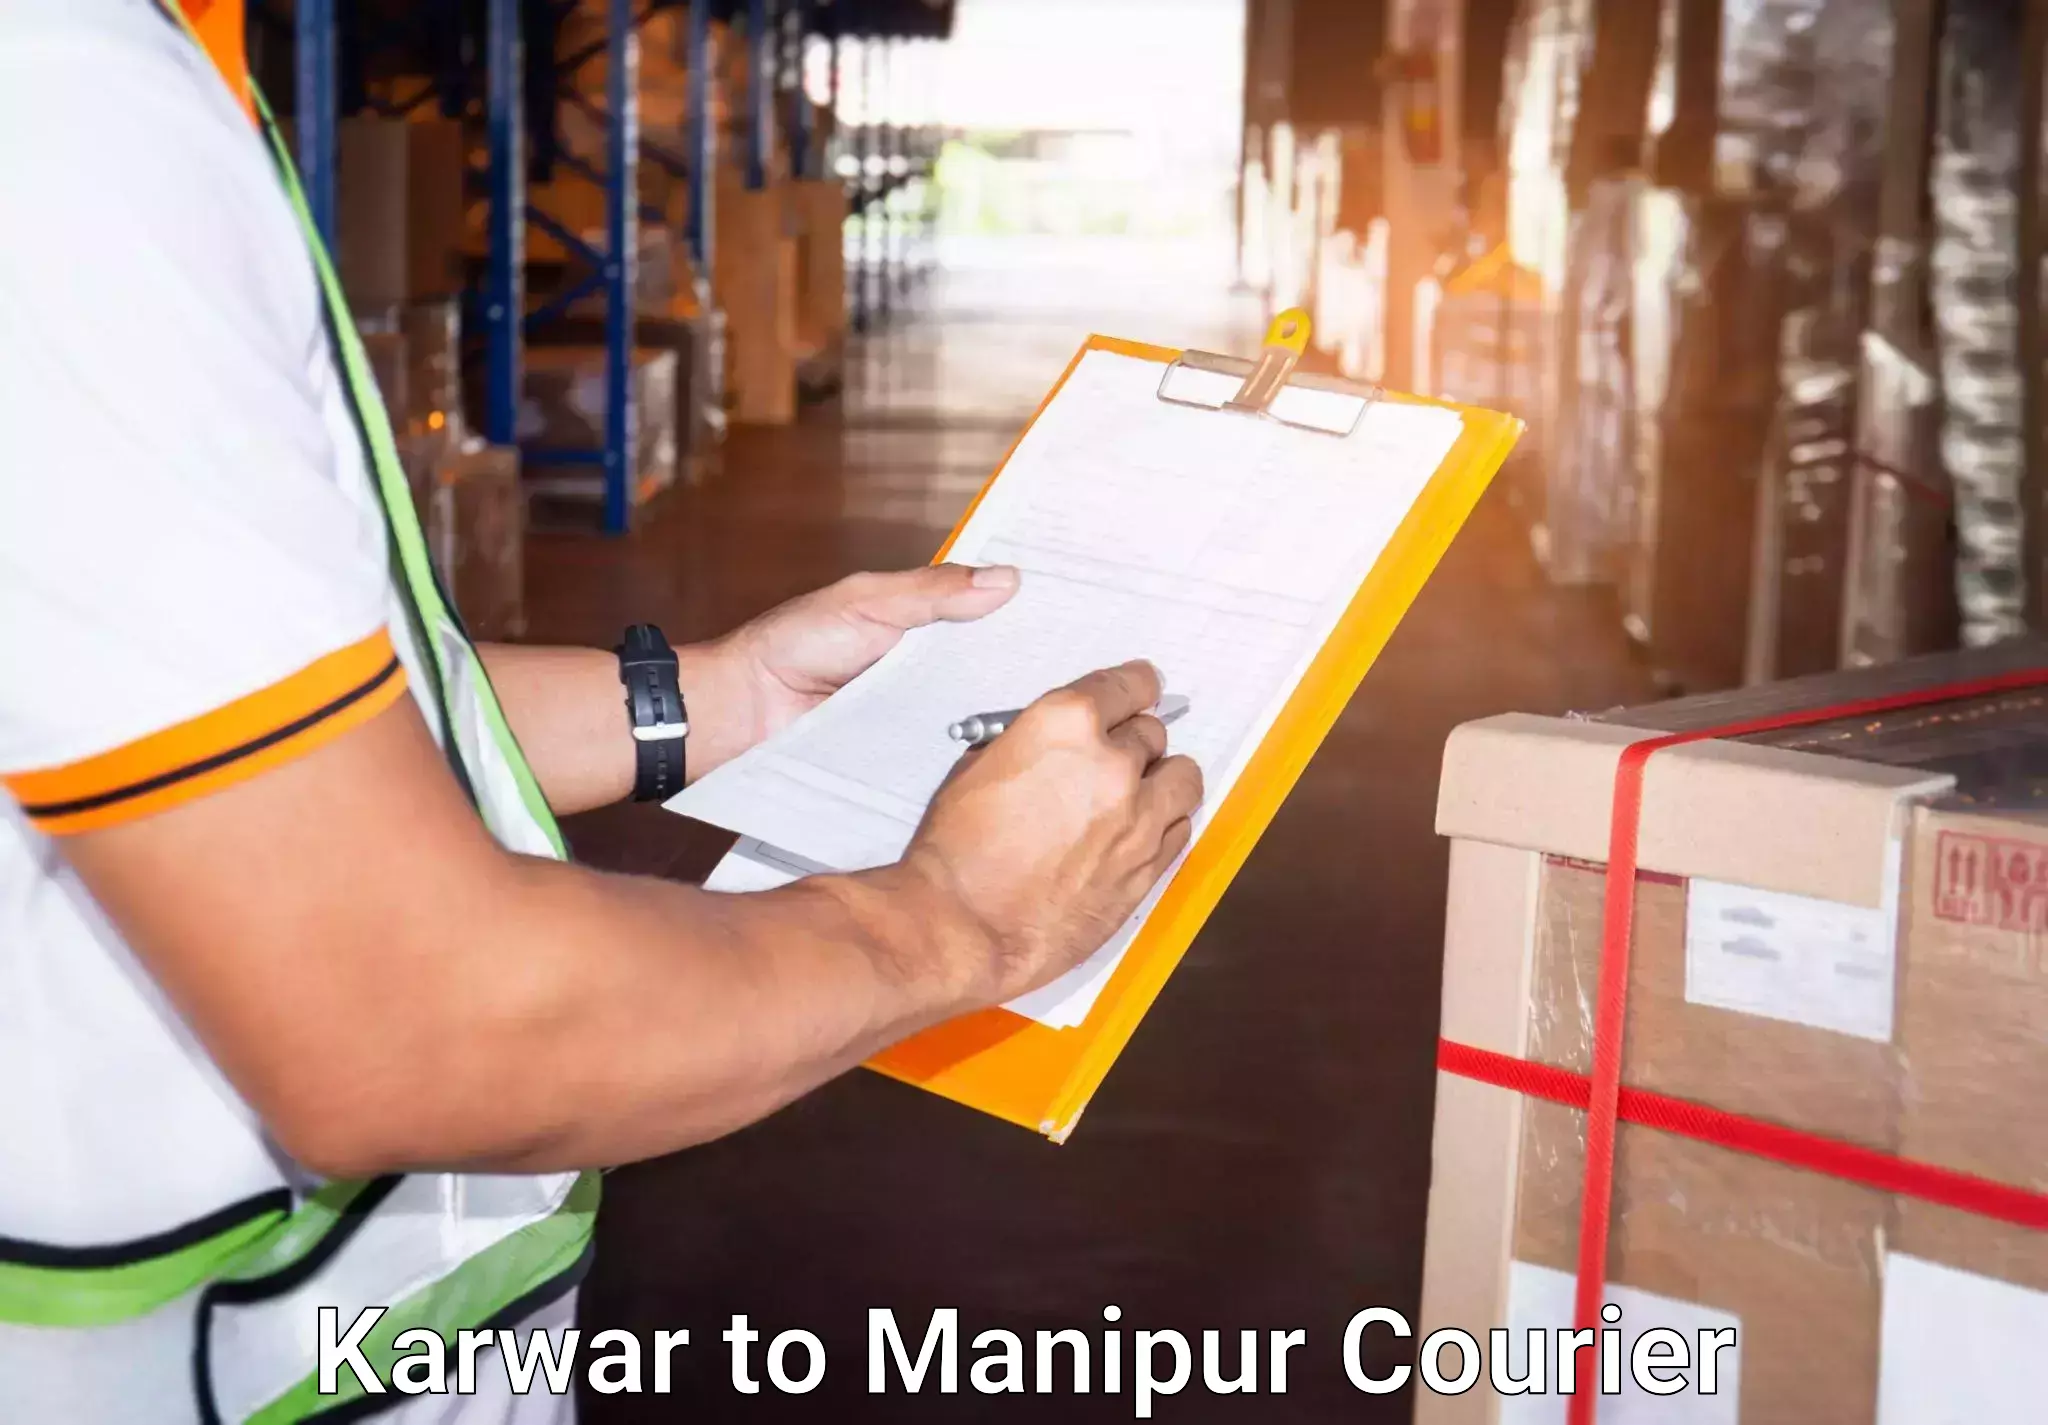 Baggage transport network Karwar to Manipur